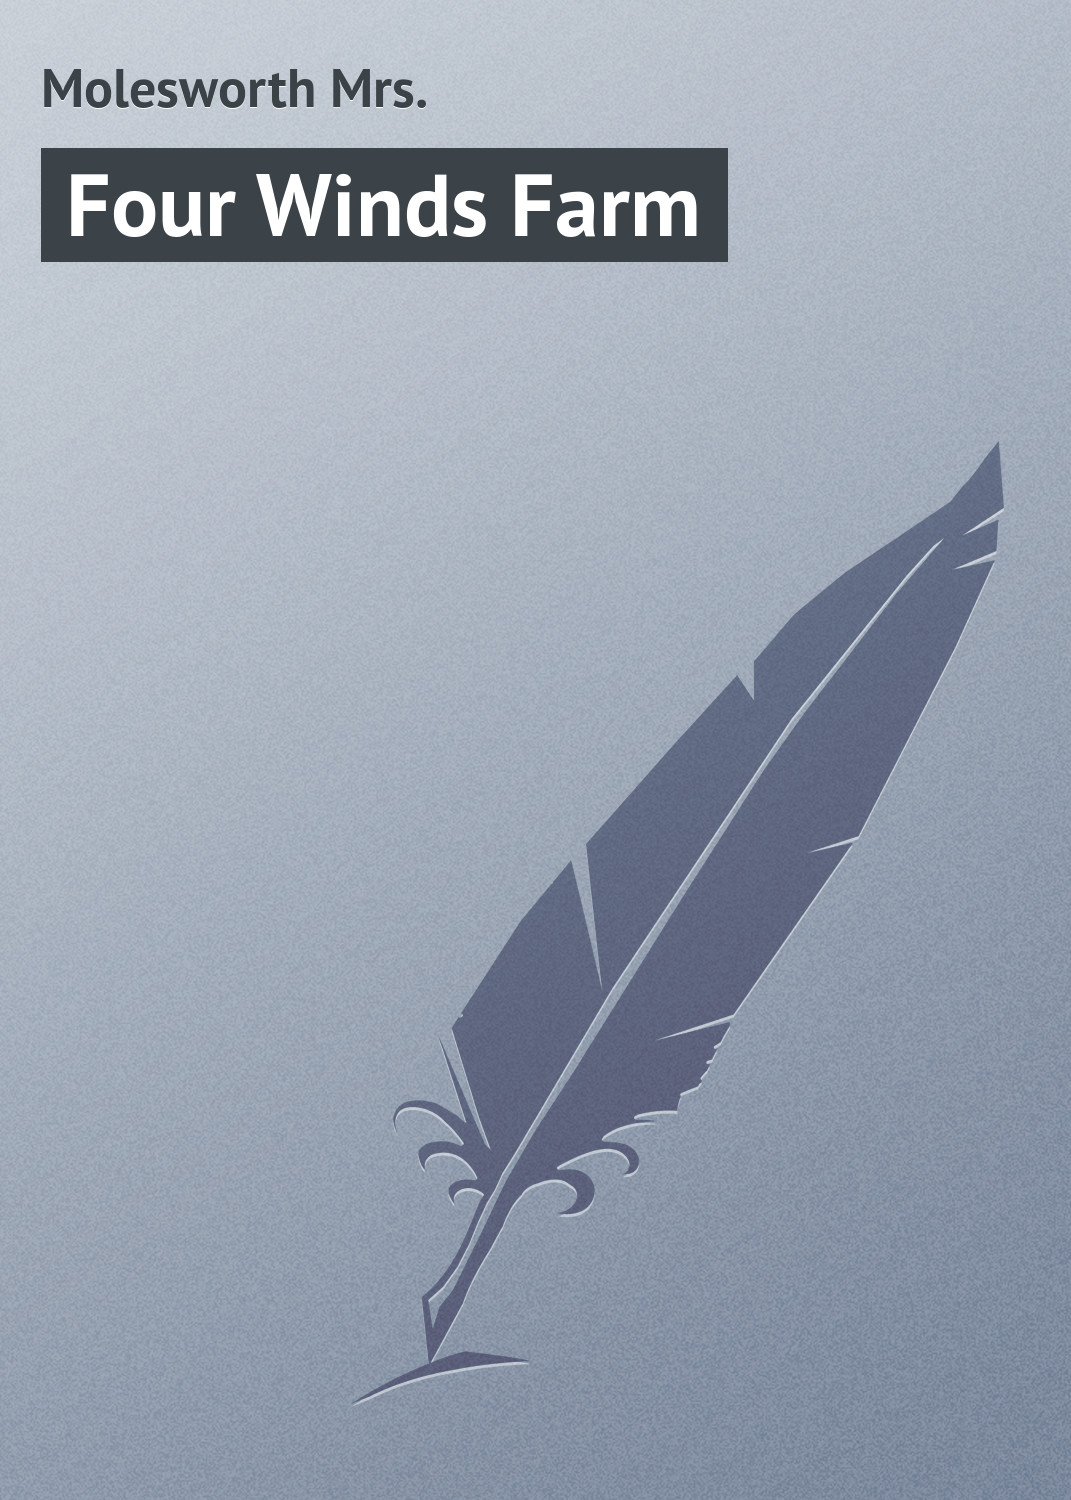 Книга Four Winds Farm из серии , созданная Mrs. Molesworth, может относится к жанру Зарубежная классика. Стоимость электронной книги Four Winds Farm с идентификатором 23157691 составляет 5.99 руб.